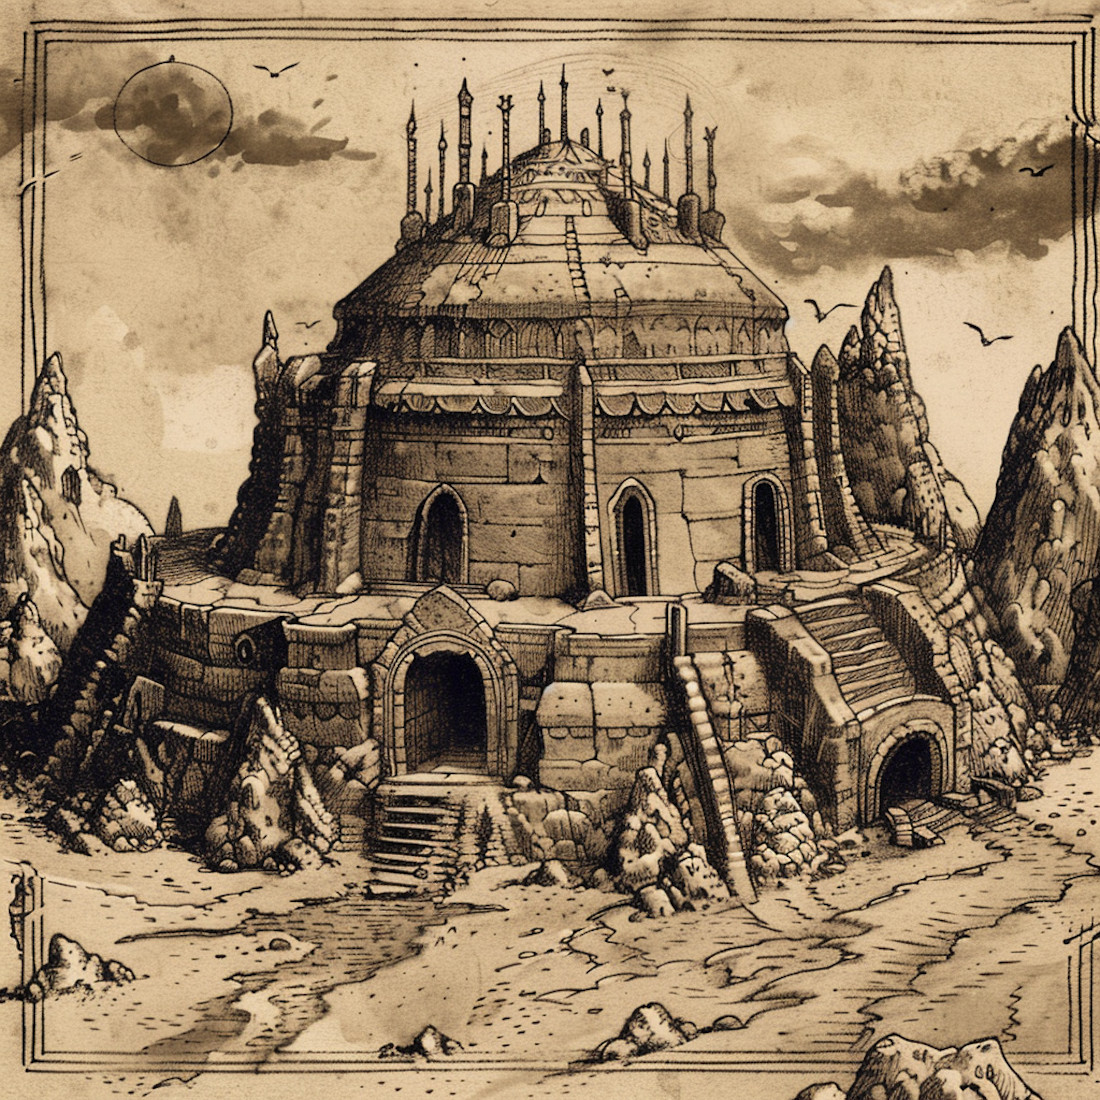 etching illustration of fantasy medieval temple, medieval fantasy assets, fantasy map, shrines, symbols,wonderdraft assets